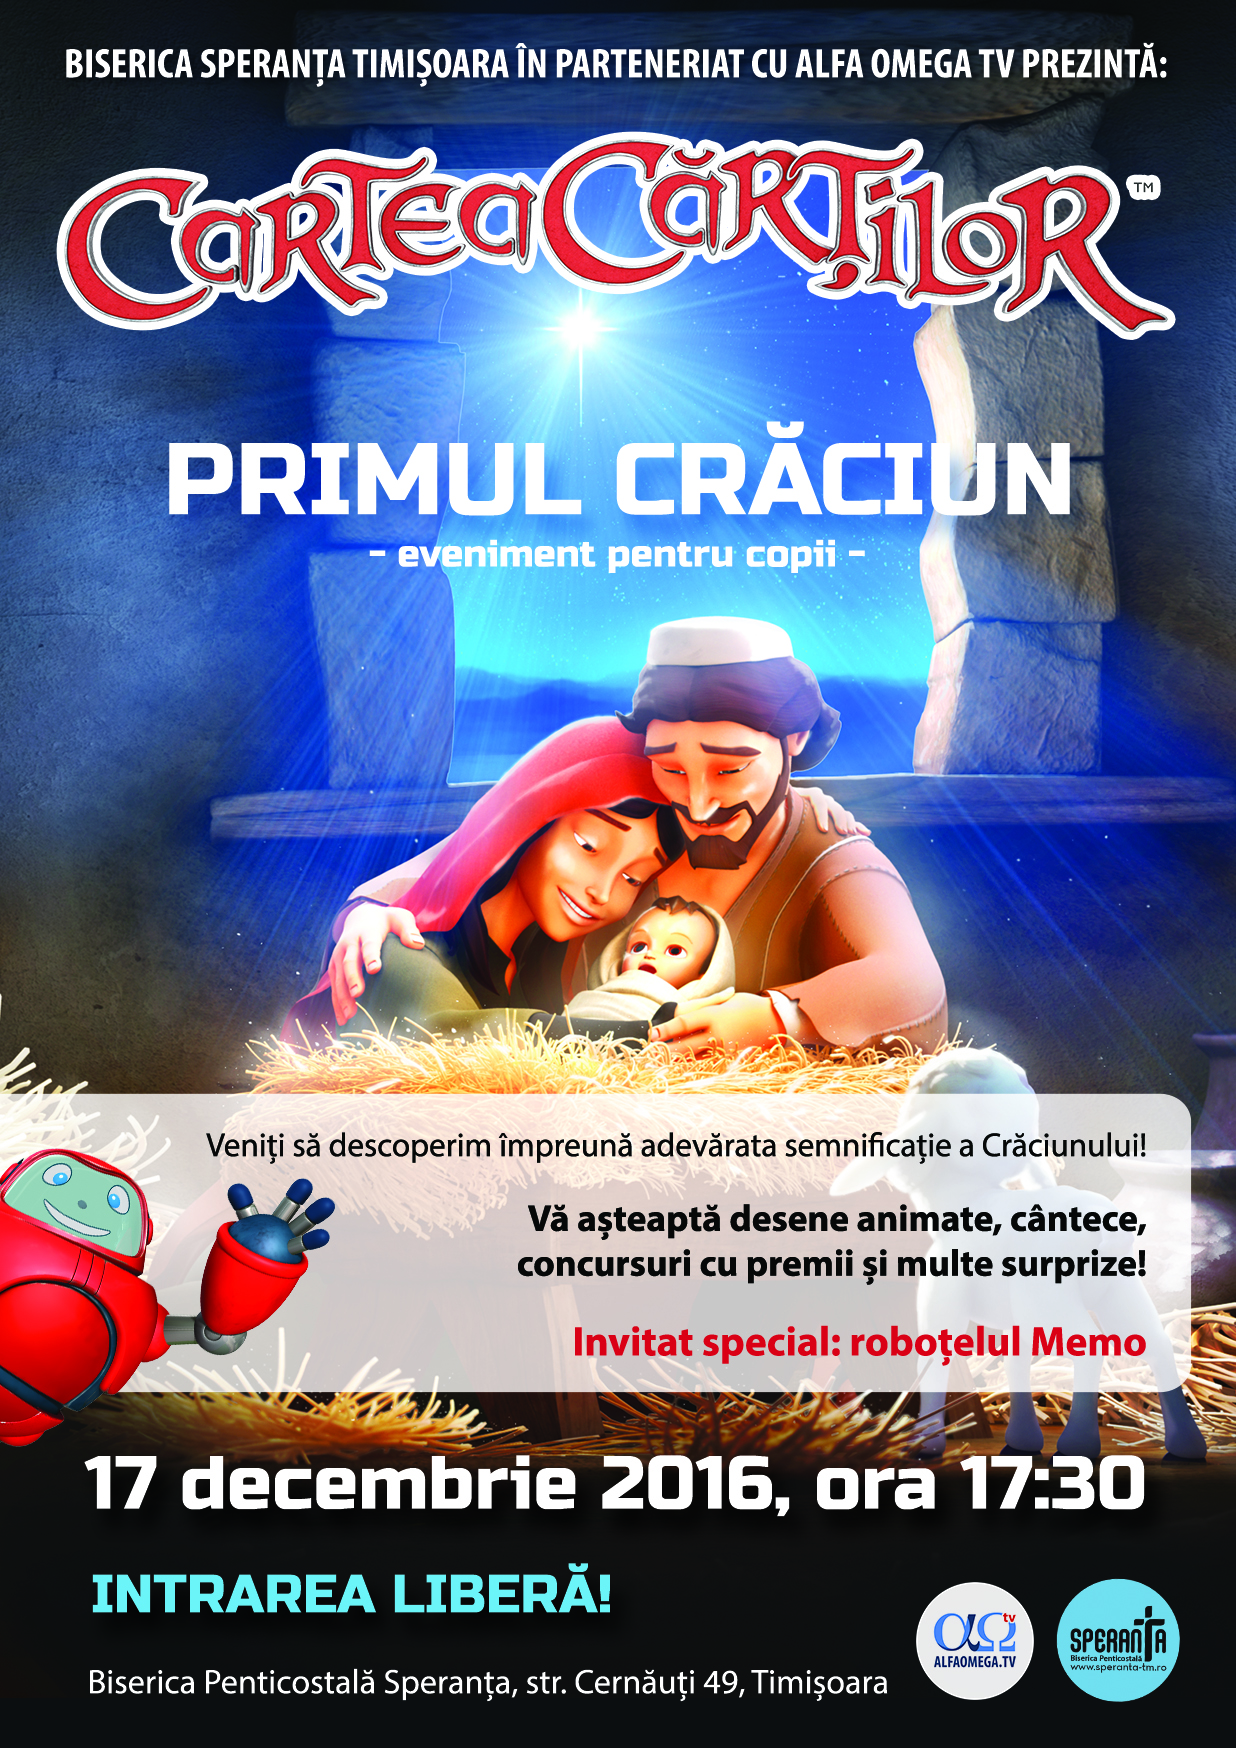 Primul Crăciun - eveniment pentru copii - Timișoara